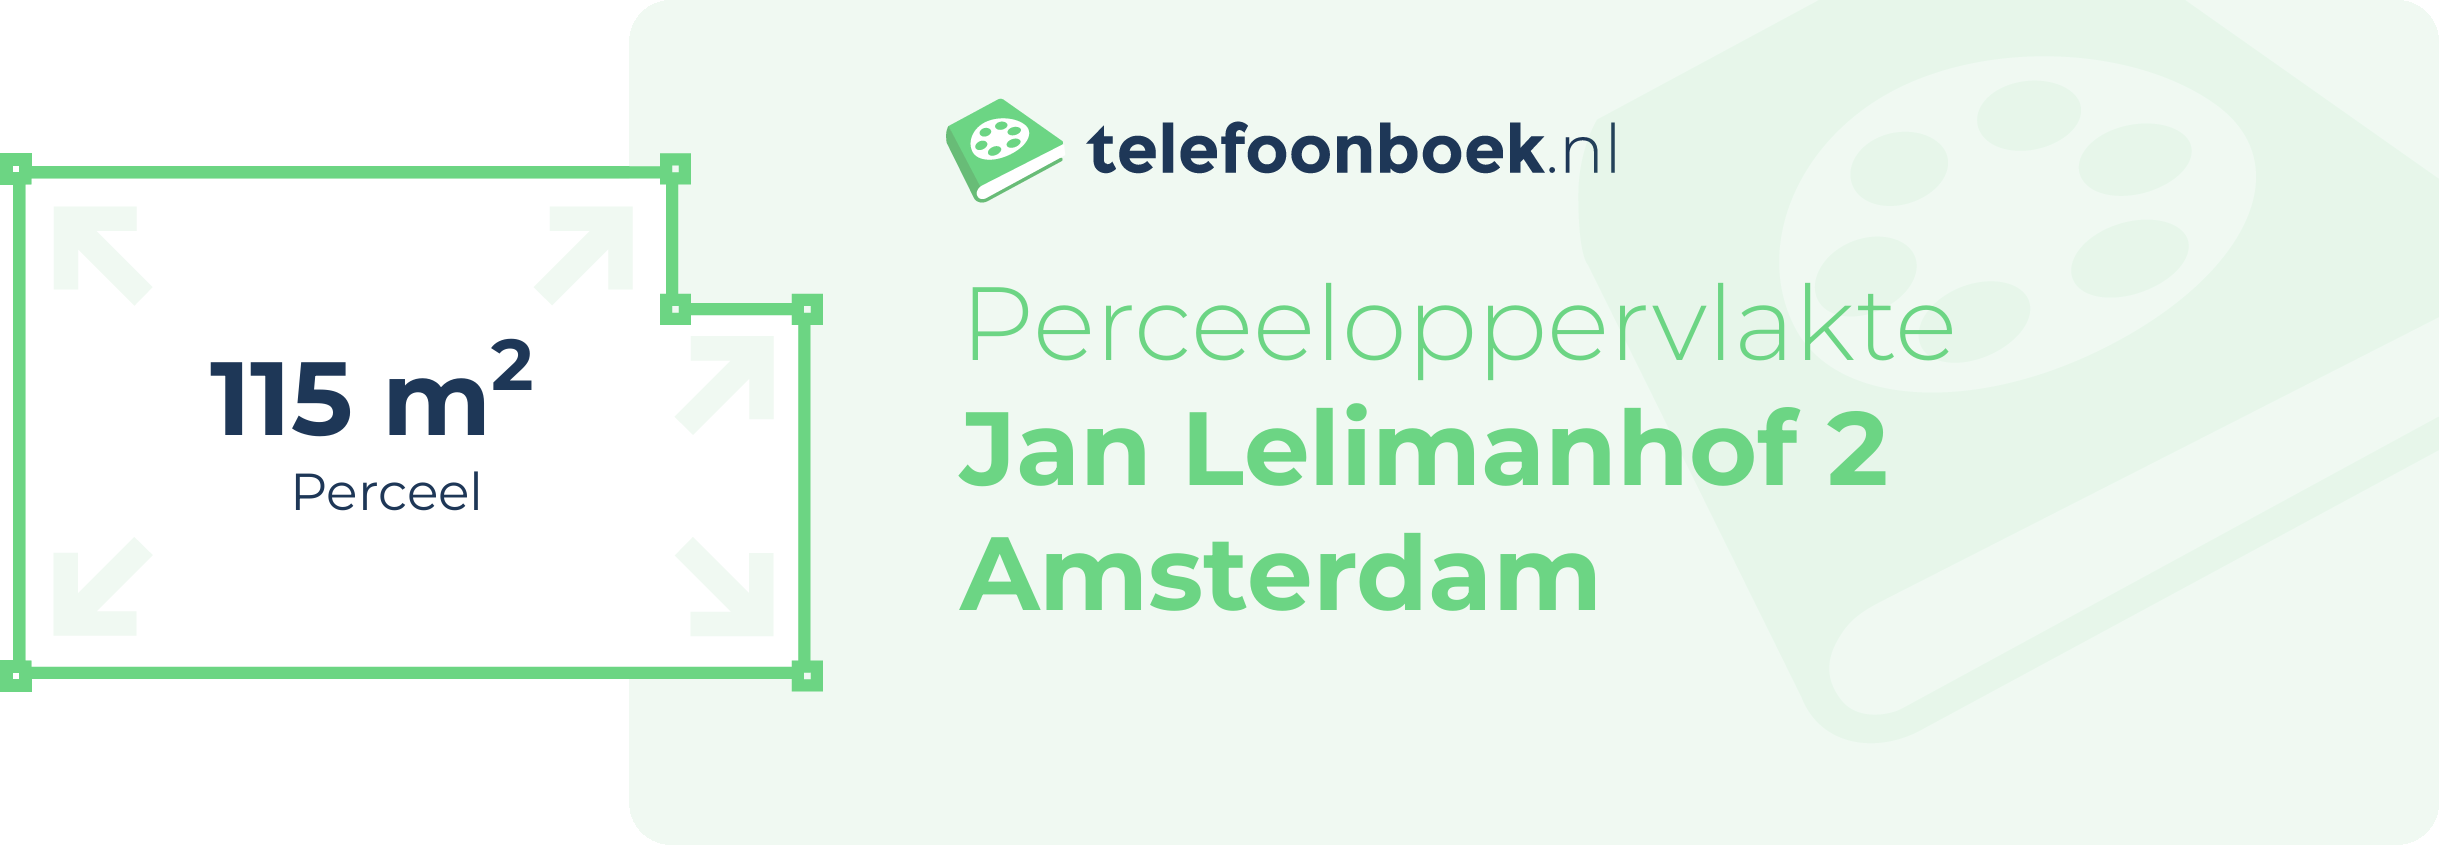 Perceeloppervlakte Jan Lelimanhof 2 Amsterdam